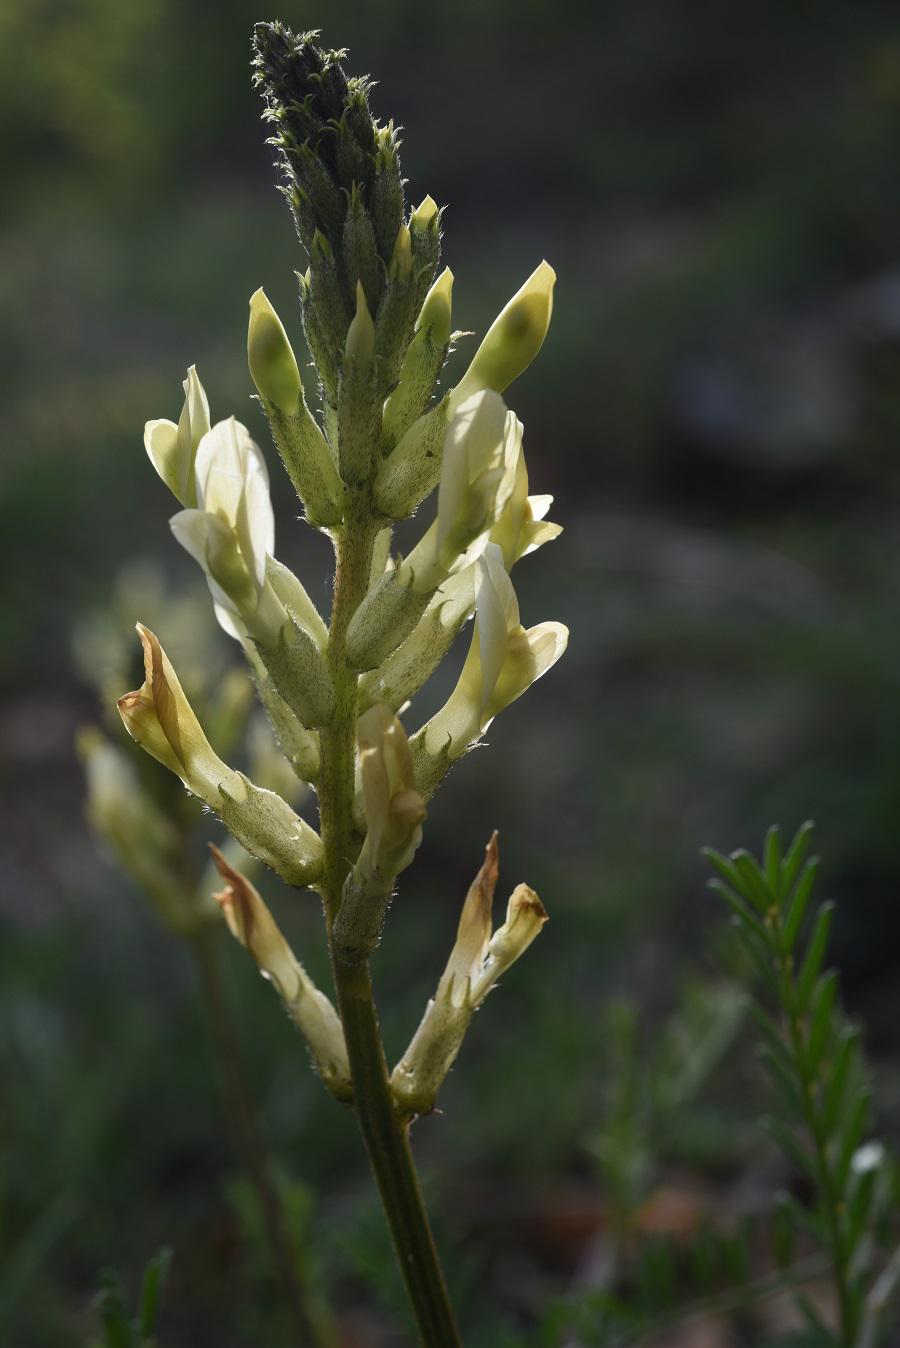 Astragalo Aquilano (Astragalus aquilanus)